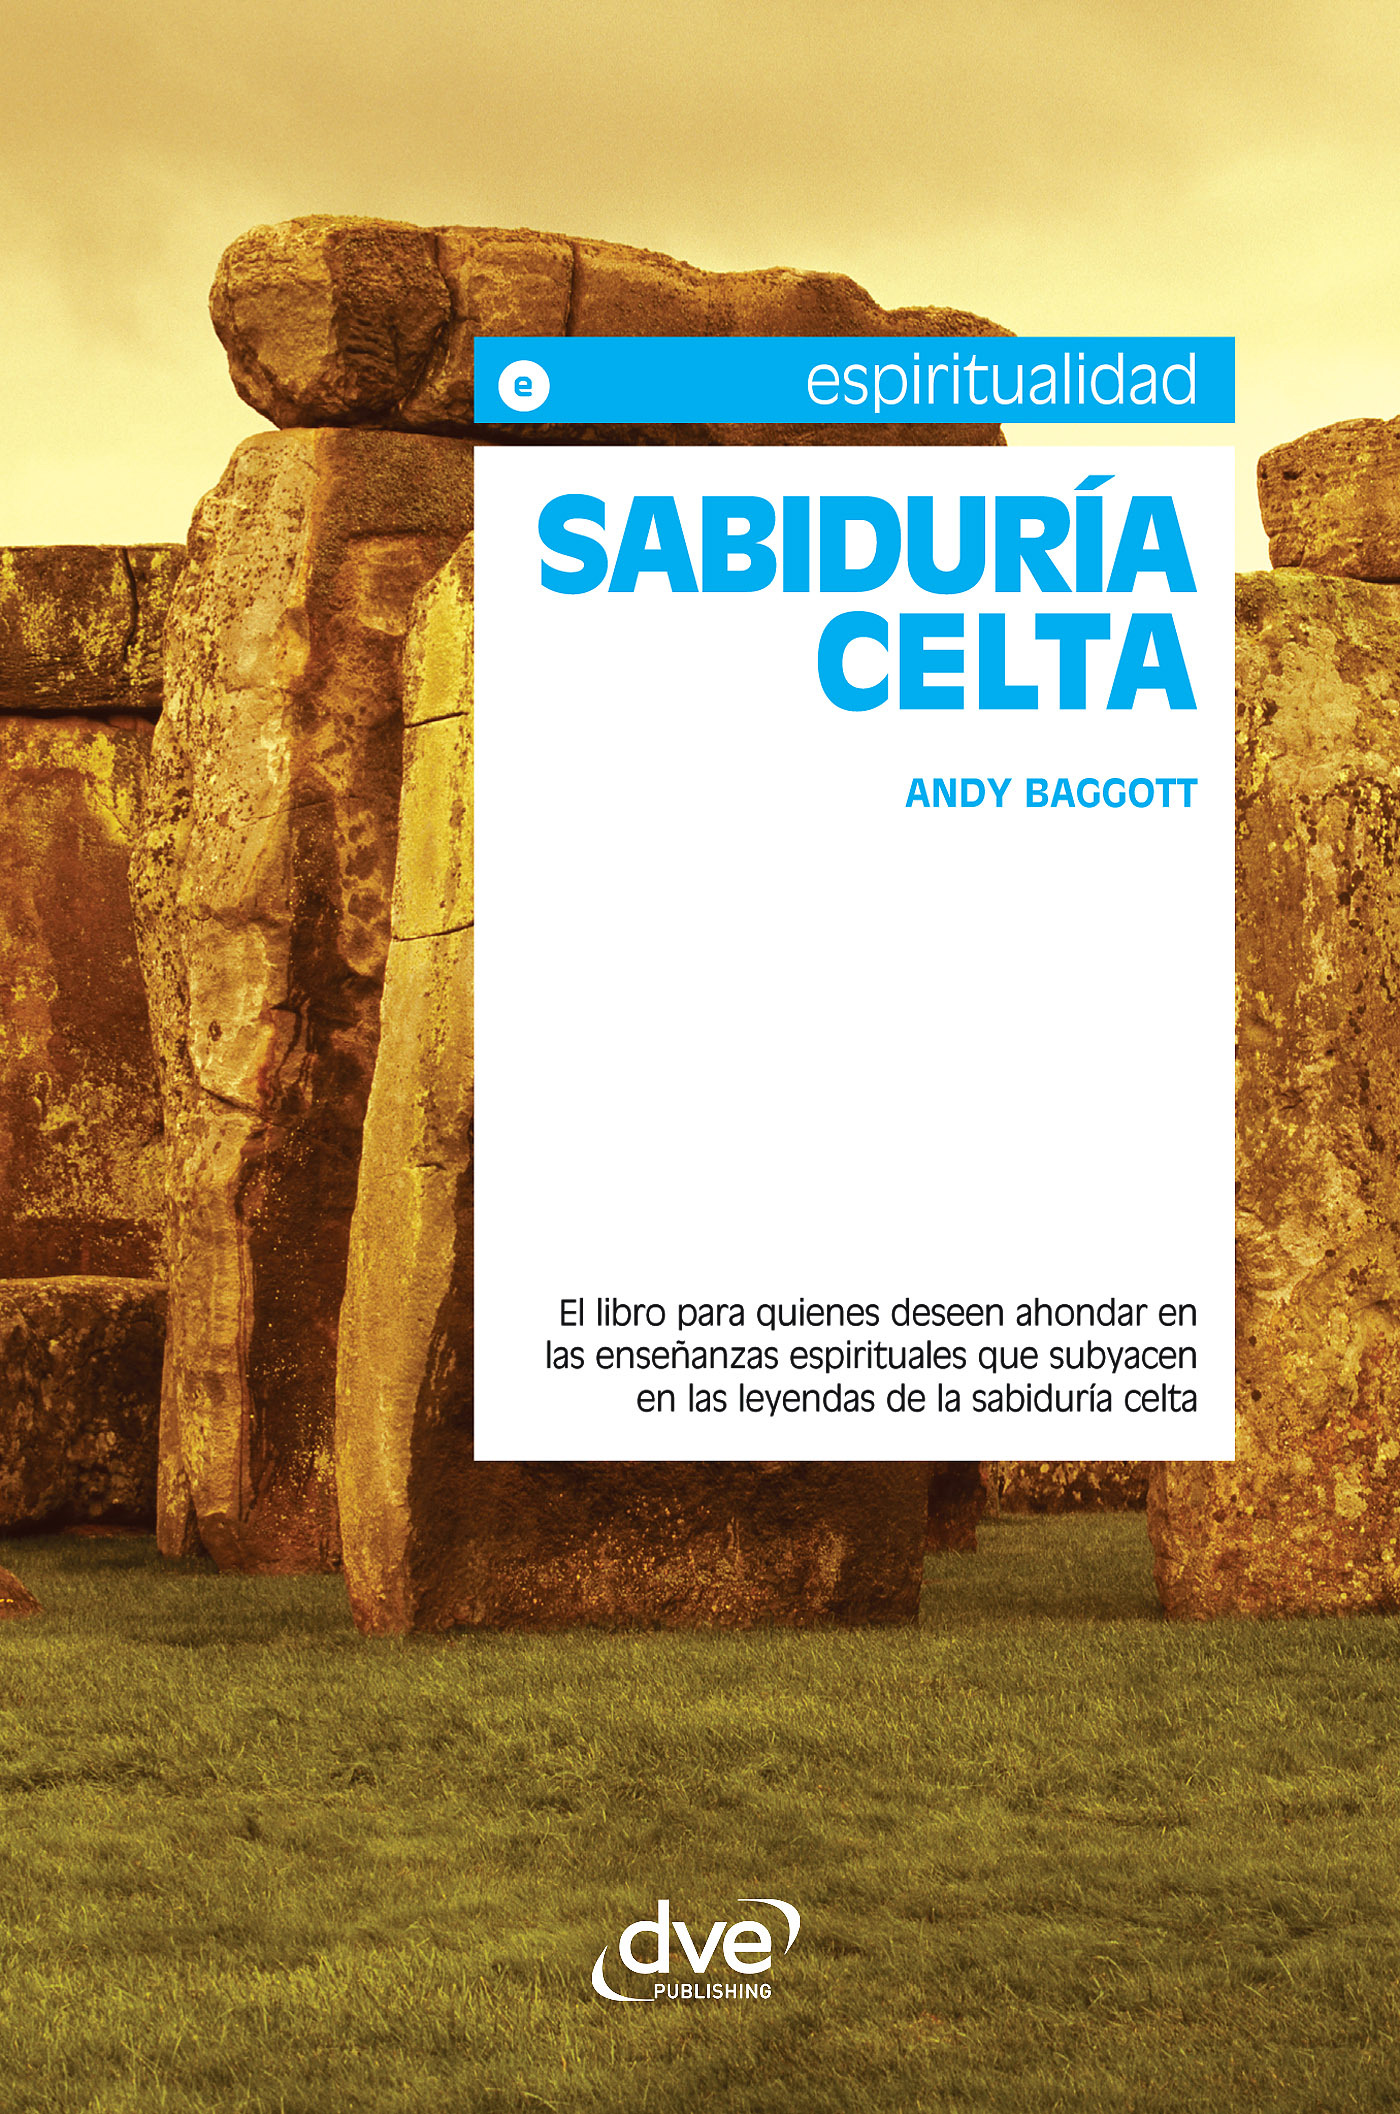 Baggott, Andy - Sabiduría celta. El libro para quienes deseen ahondar en las enseñanzas espirituales que subyacen en las leyendas de la sabiduría celta, ebook